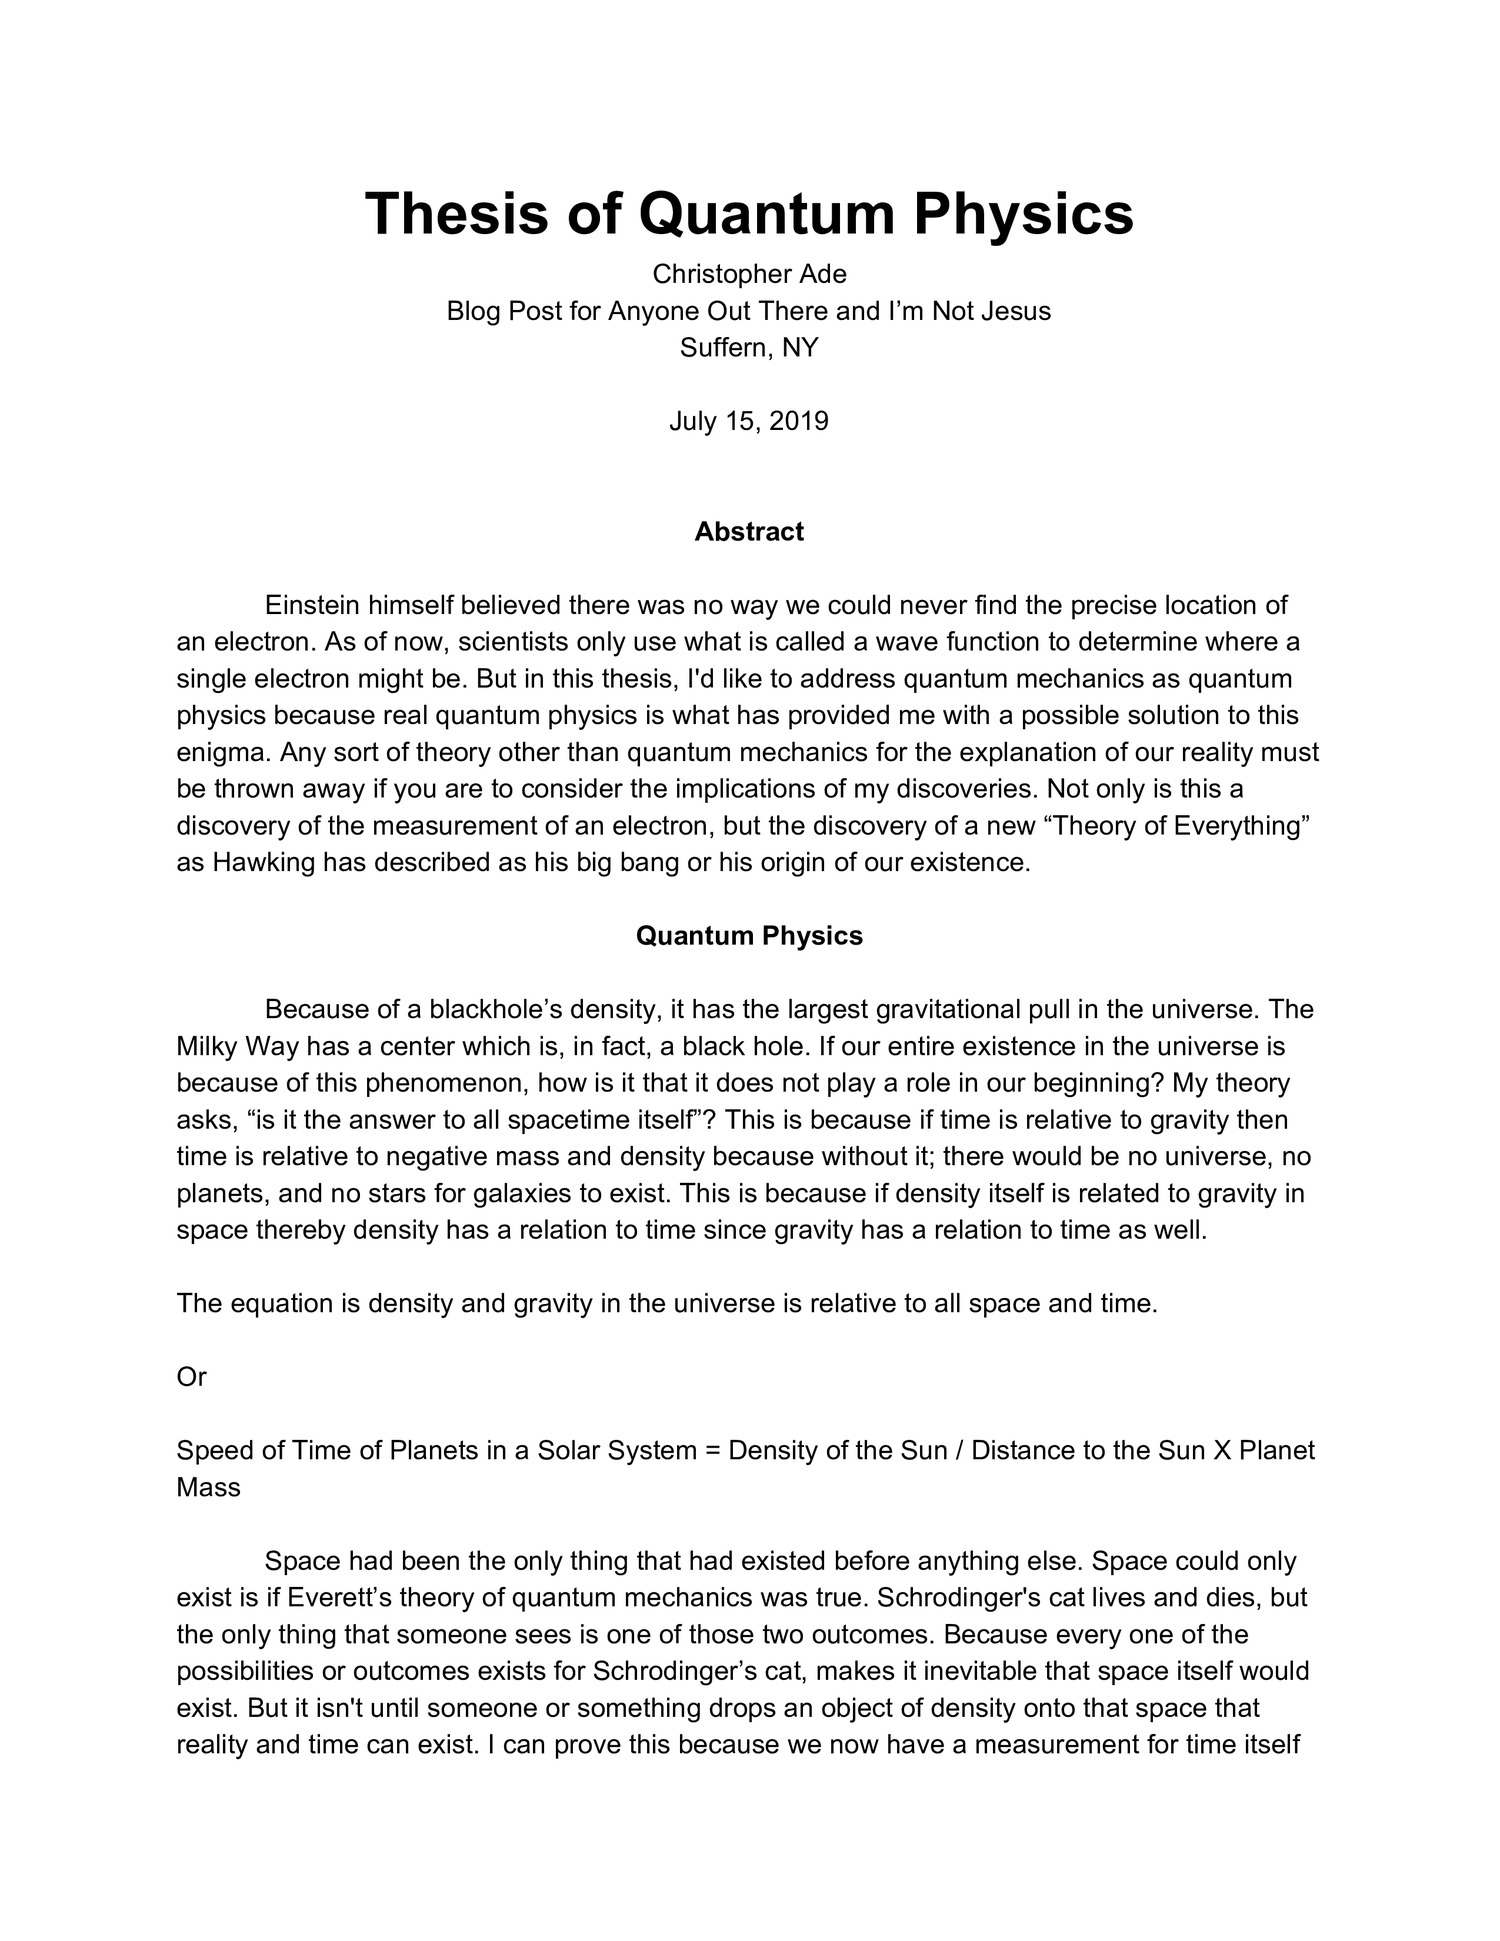 quantum physics essay topics